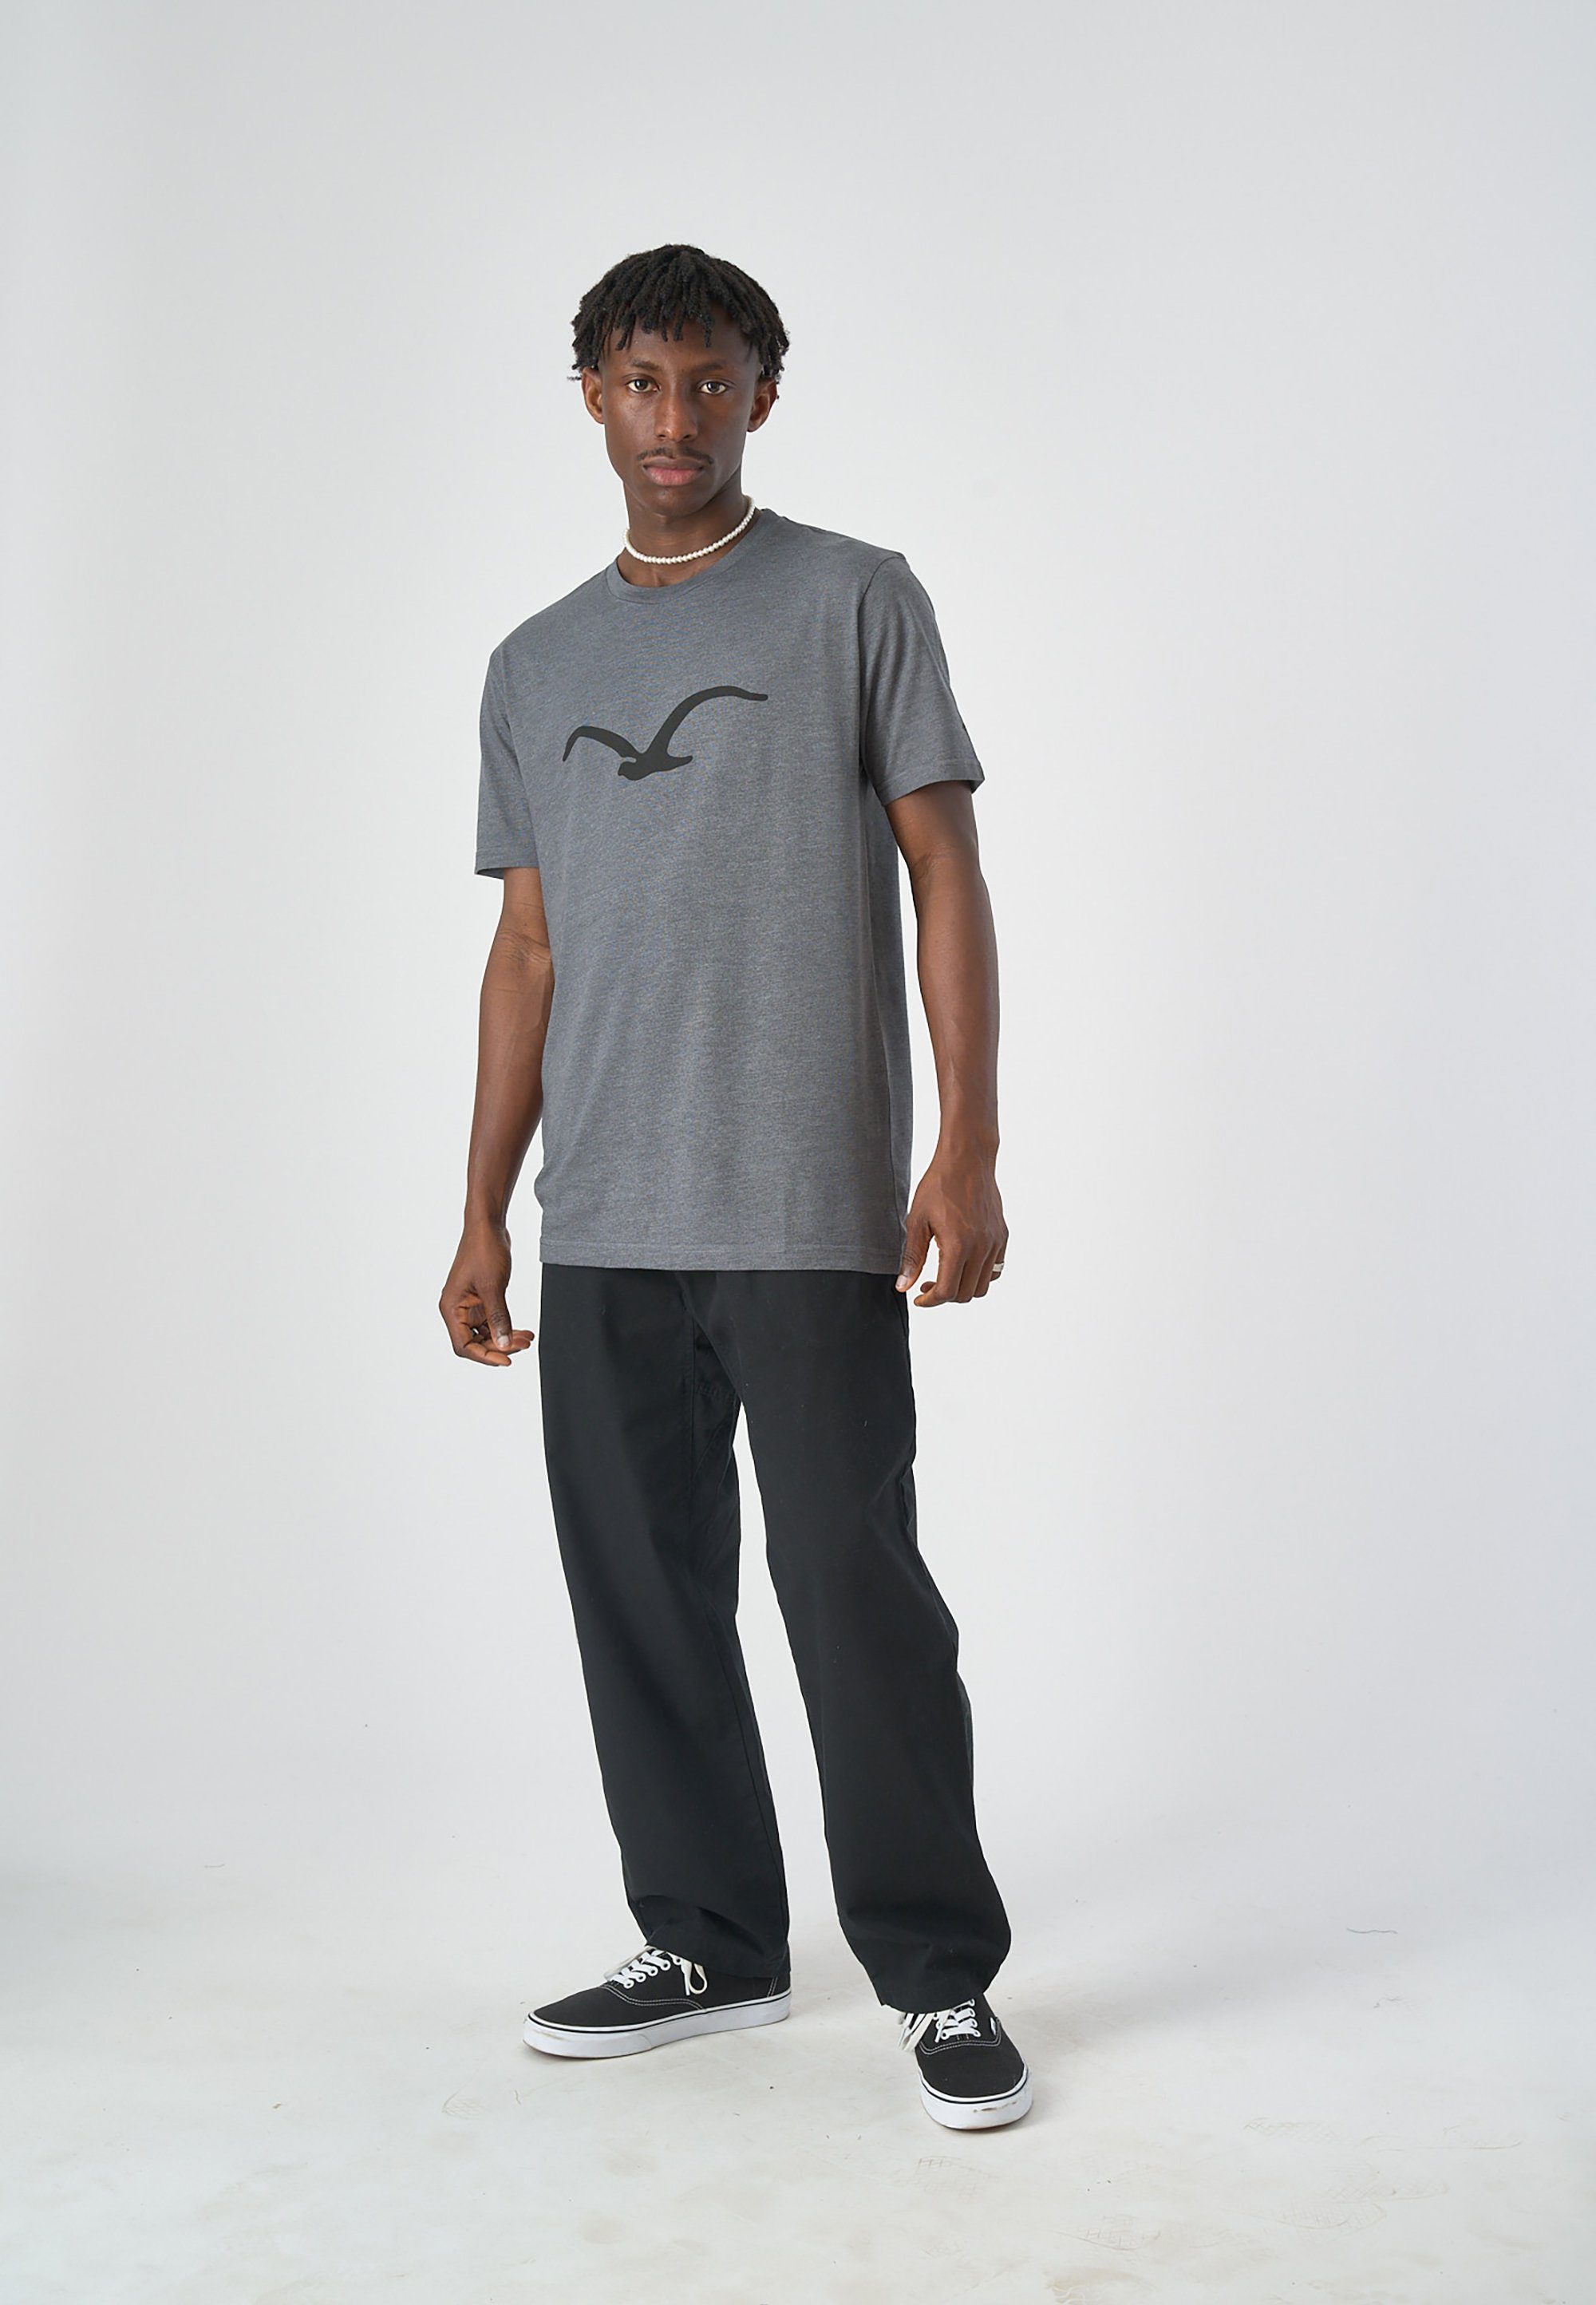 Mowe T-Shirt klassischem mit Print Cleptomanicx hellbraun-schwarz